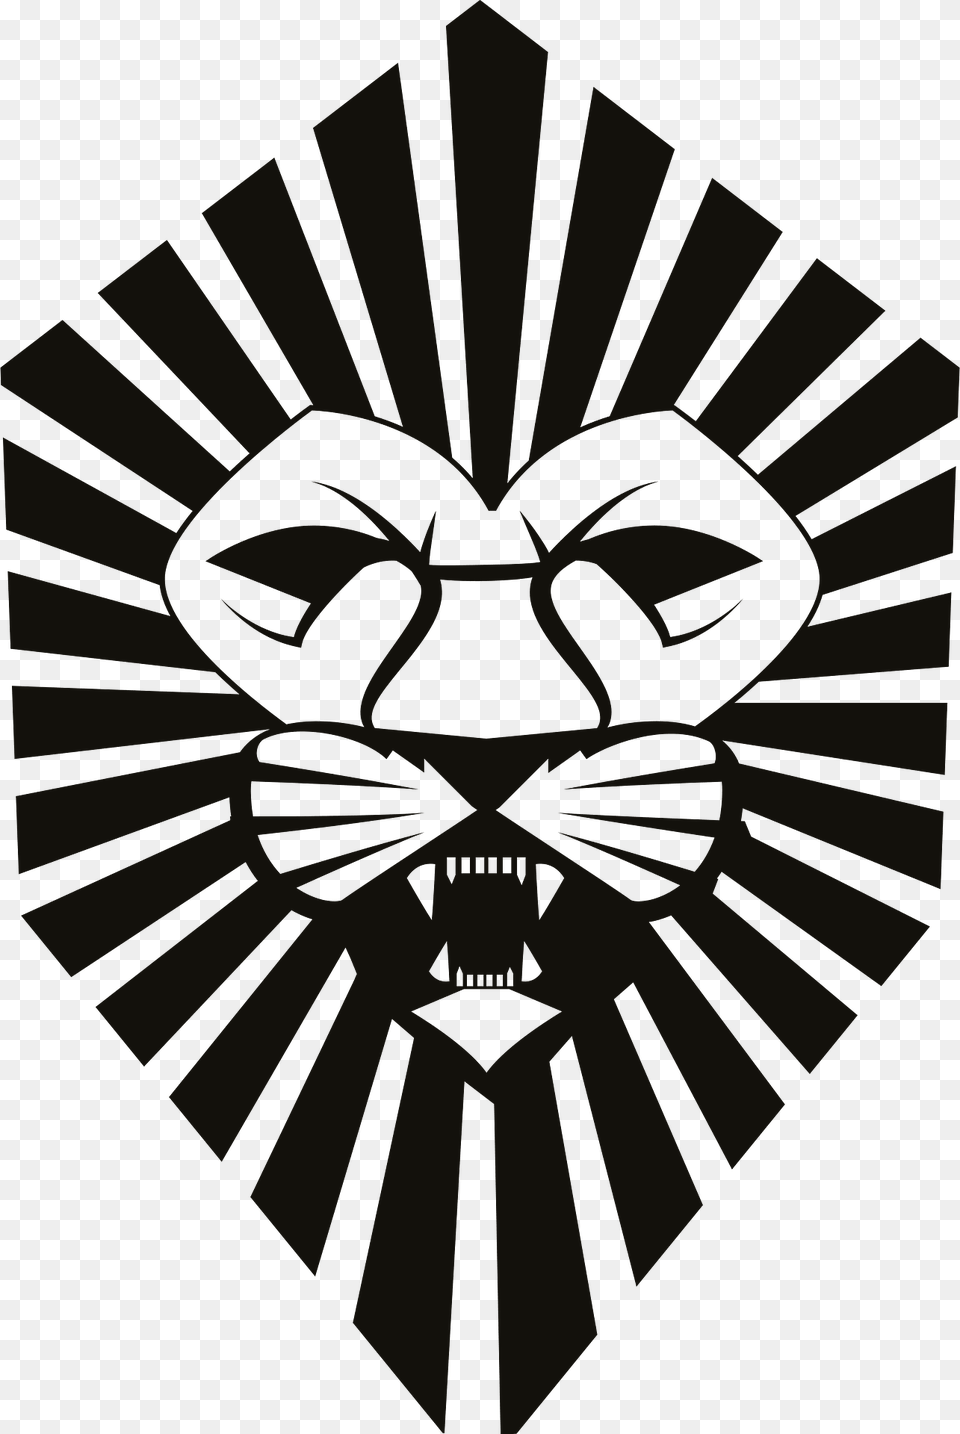 Lion Head Clipart, Emblem, Symbol, Logo, Person Png Image